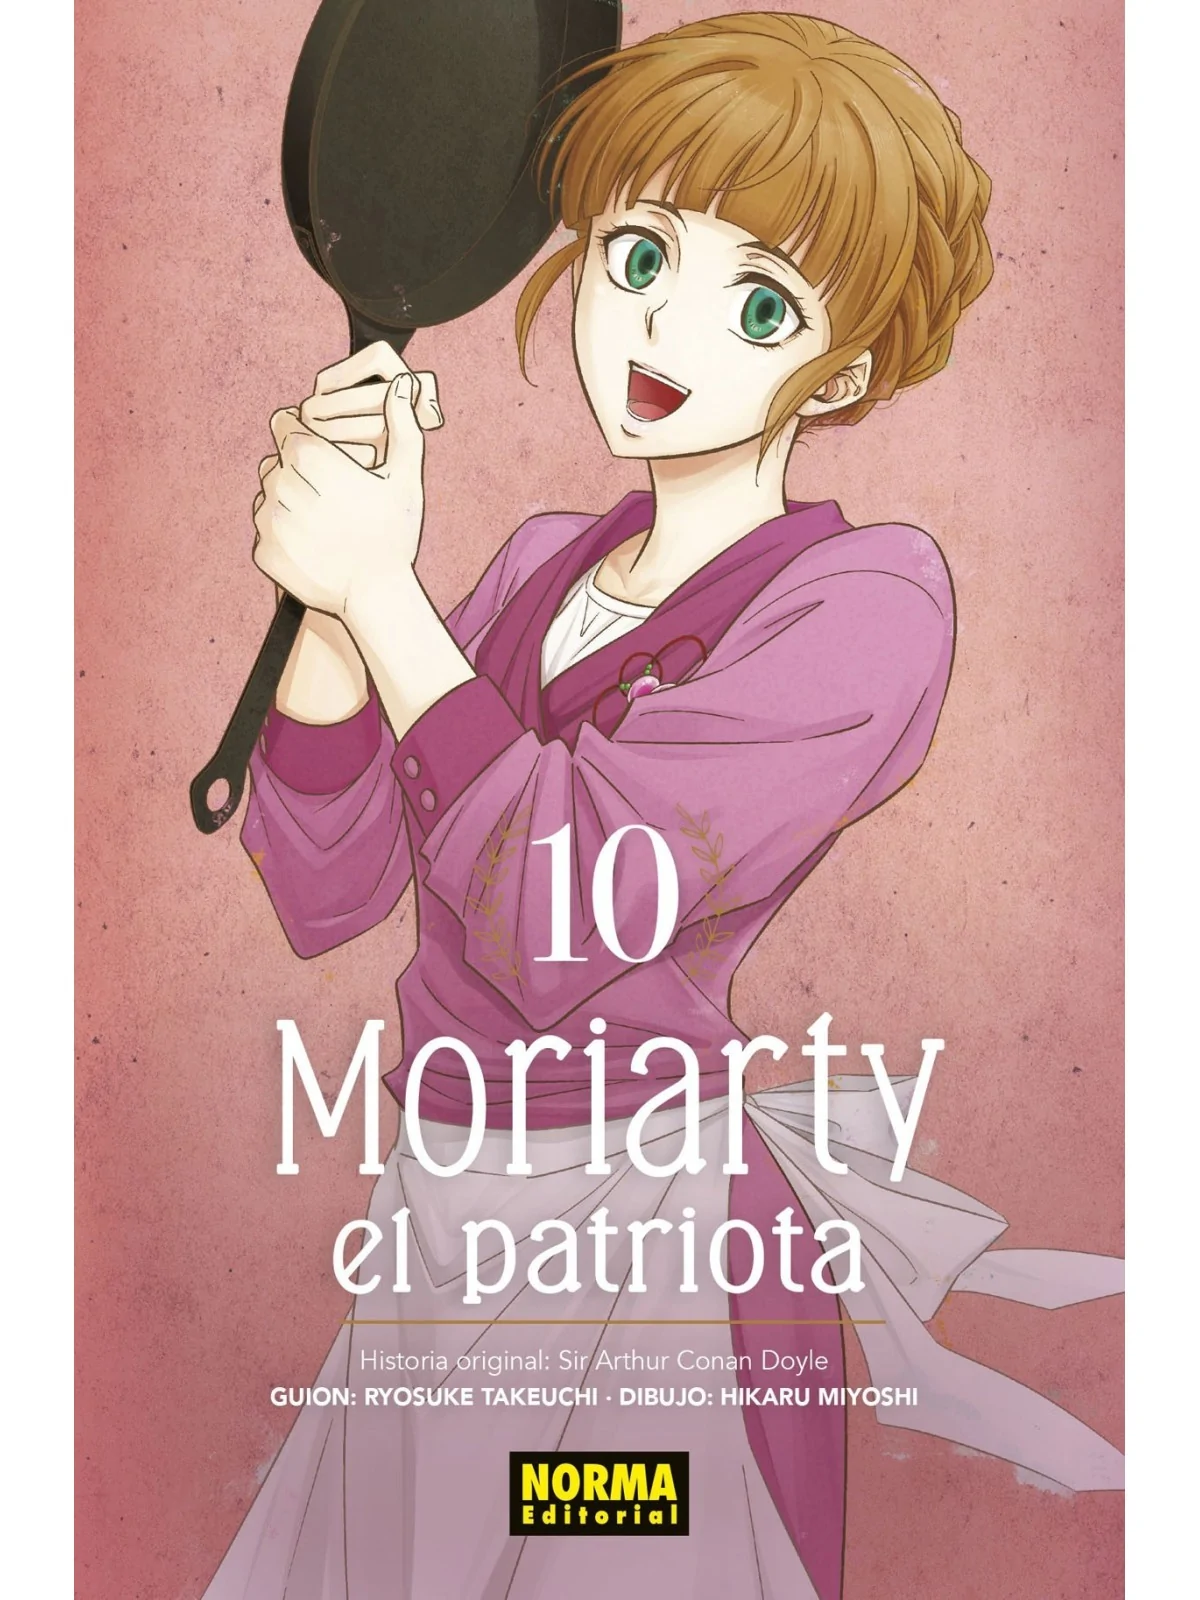 Comprar Moriarty el Patriota 10 barato al mejor precio 8,55 € de Norma